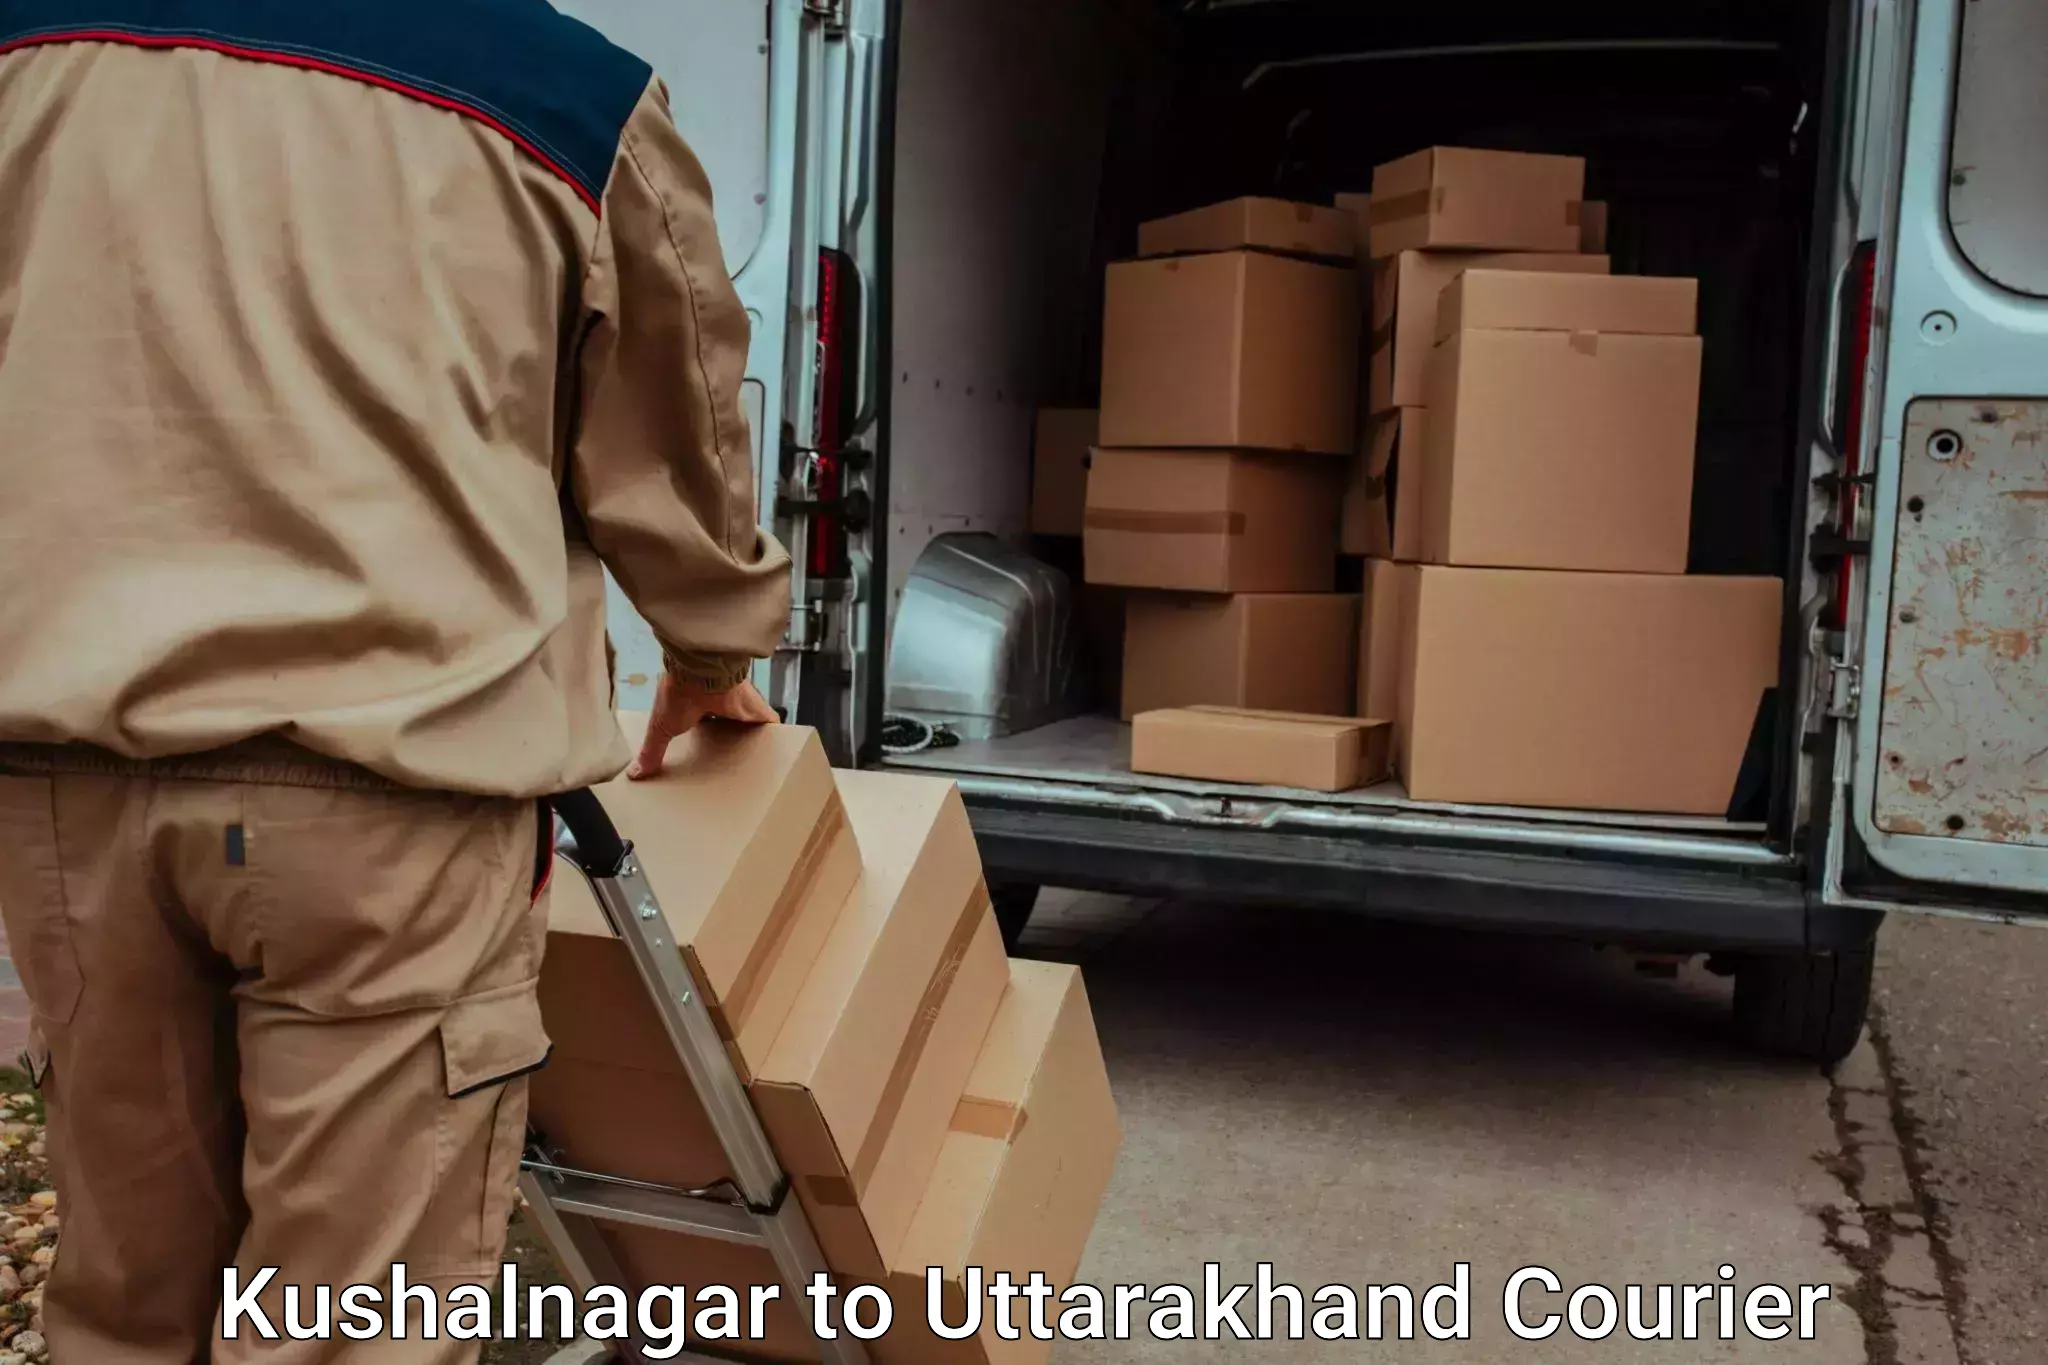 Luggage delivery providers Kushalnagar to Uttarakhand